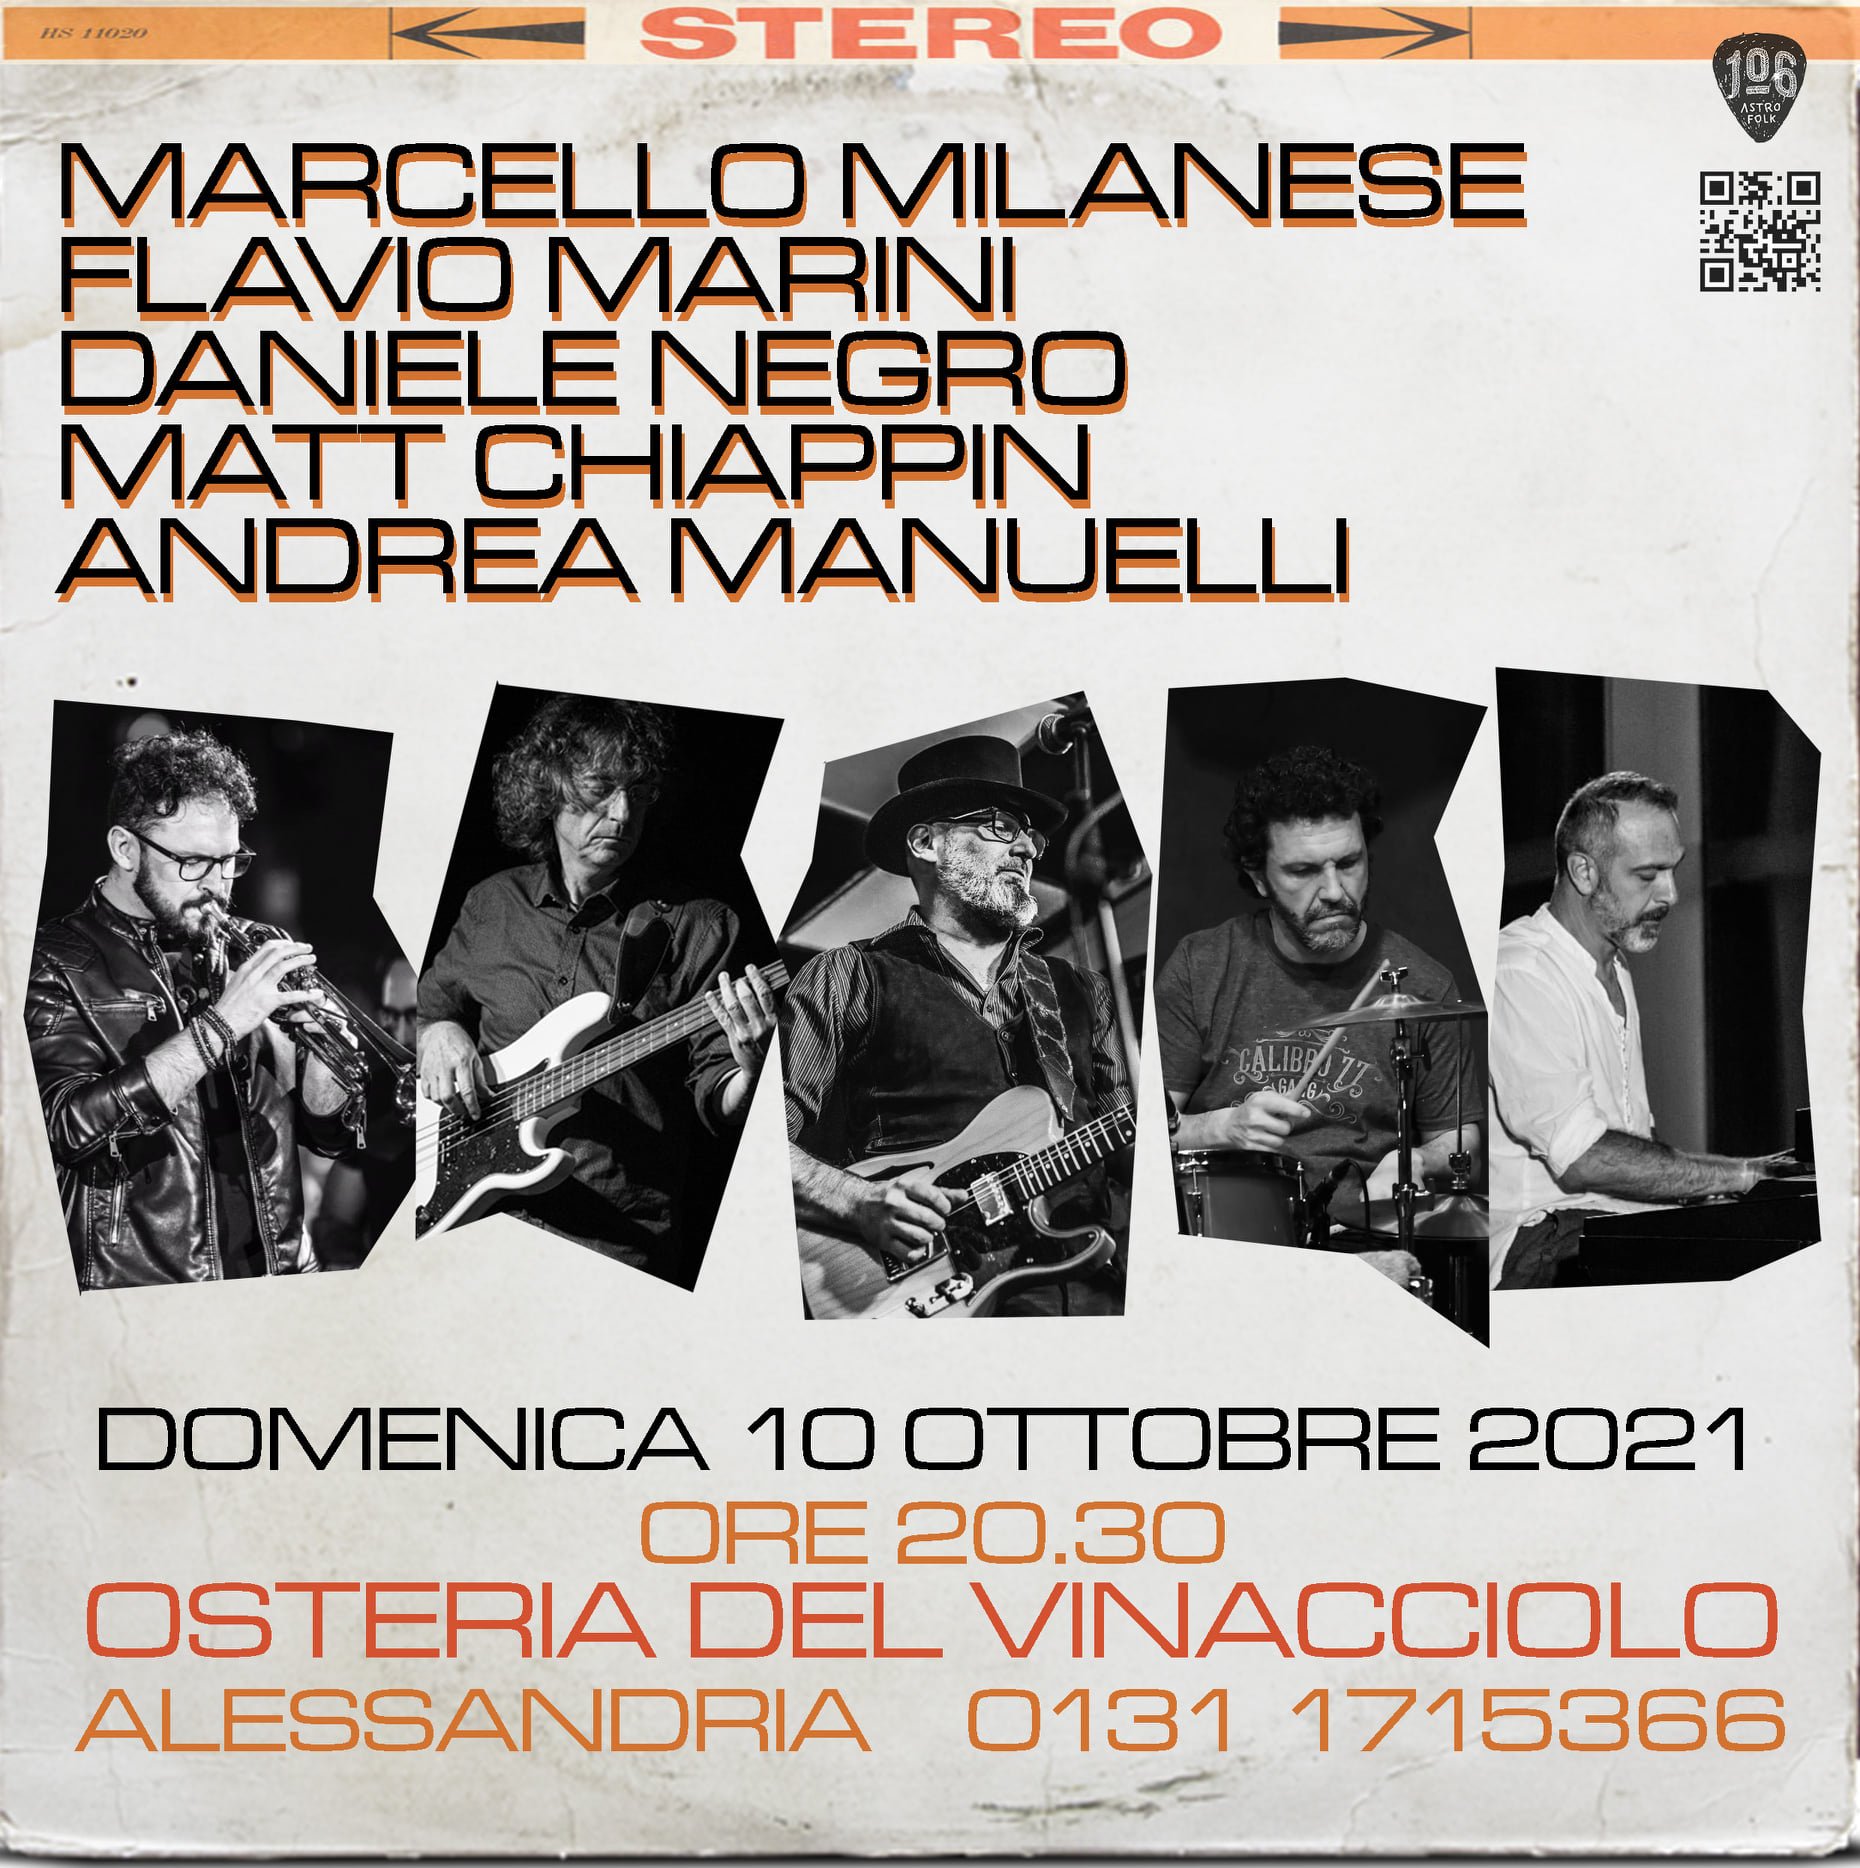 Marcello Milanese 106 in Quintet live all’Osteria del Vinacciolo